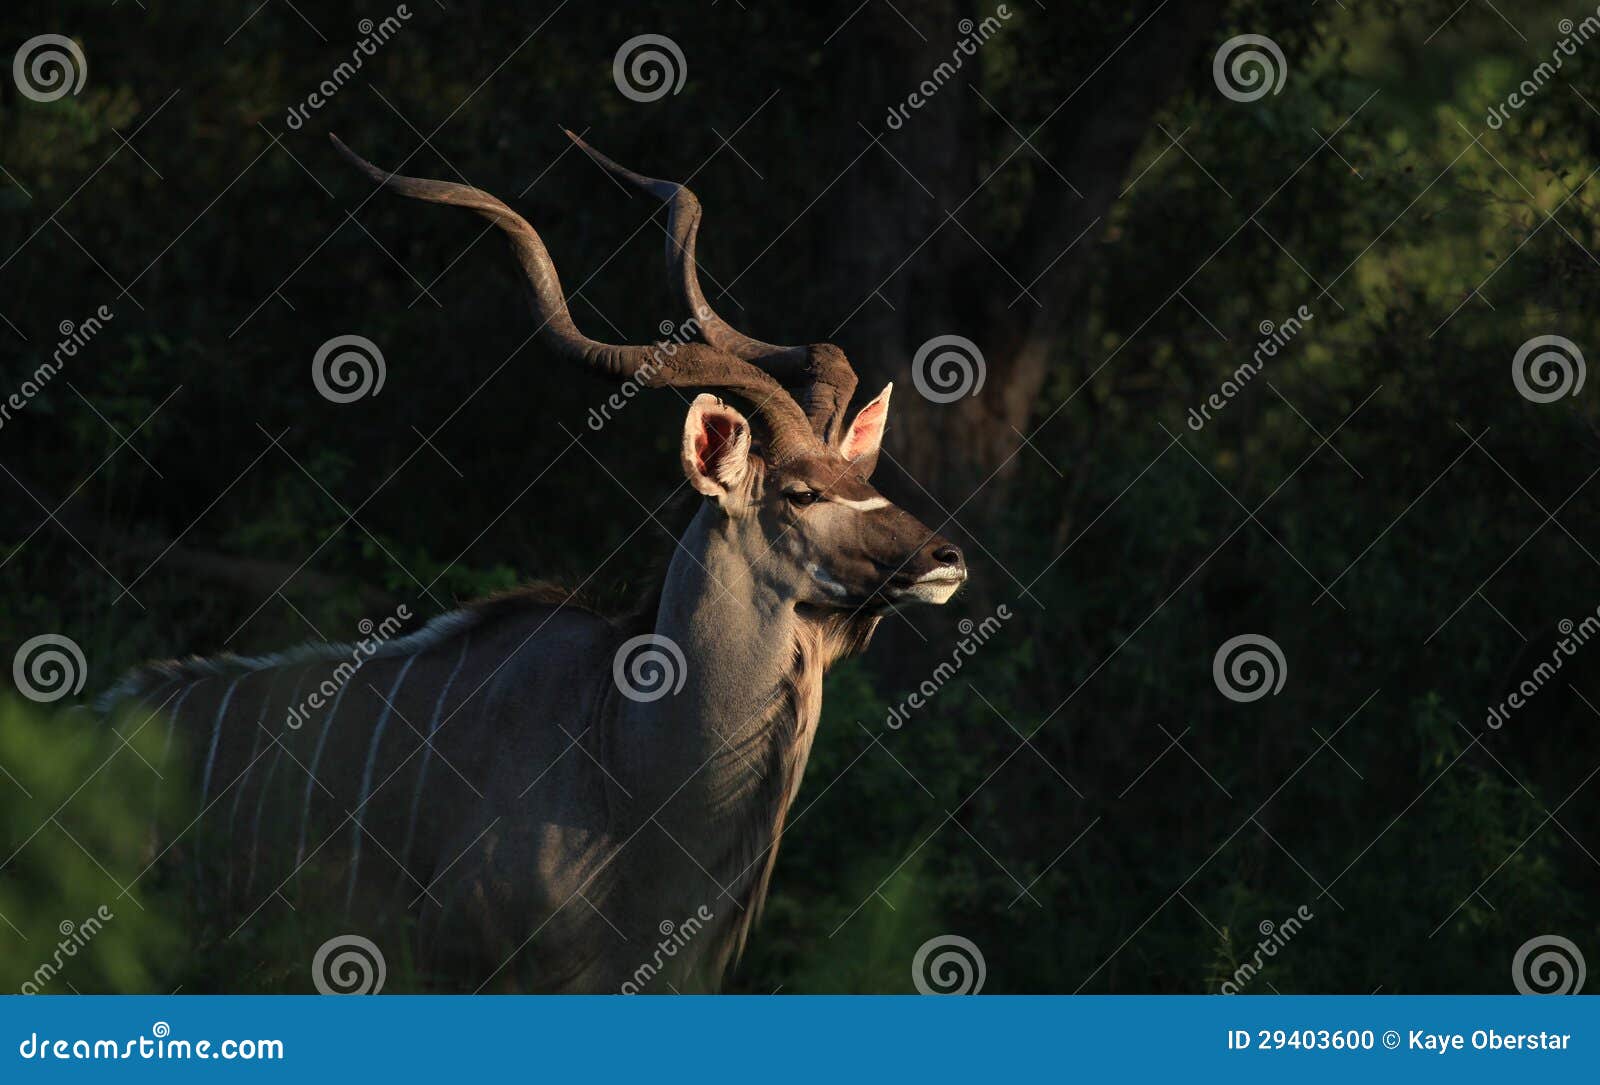 greater kudu in kruger national park